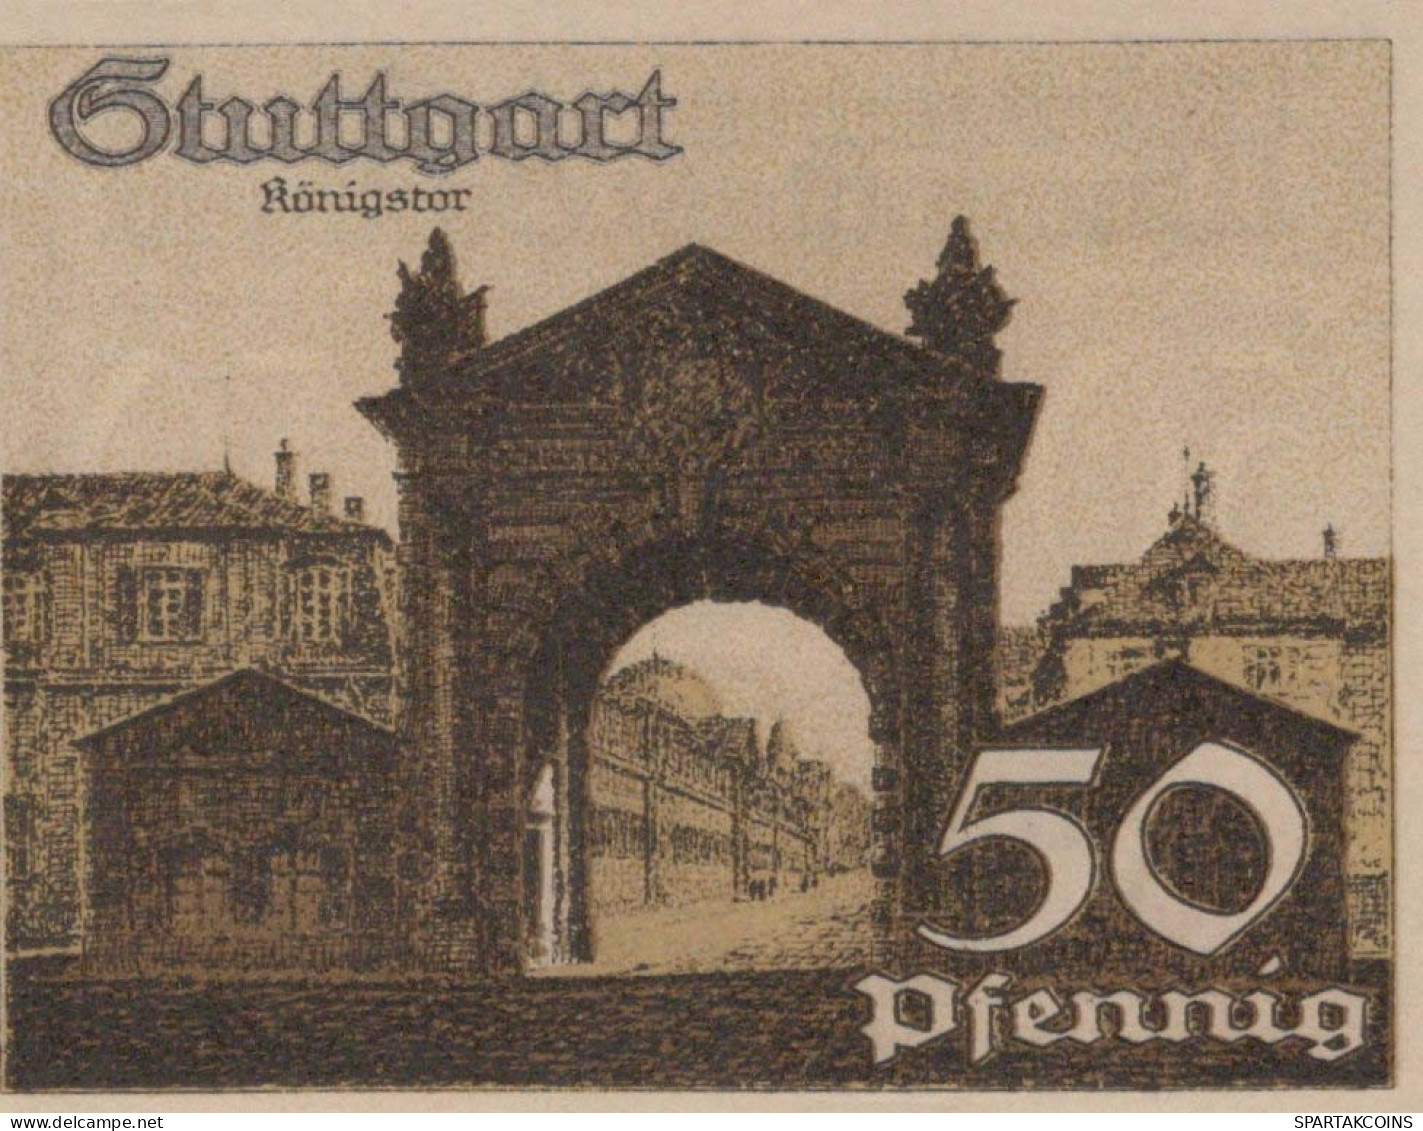 50 PFENNIG 1921 Stadt STUTTGART Württemberg UNC DEUTSCHLAND Notgeld #PC430 - [11] Emissions Locales